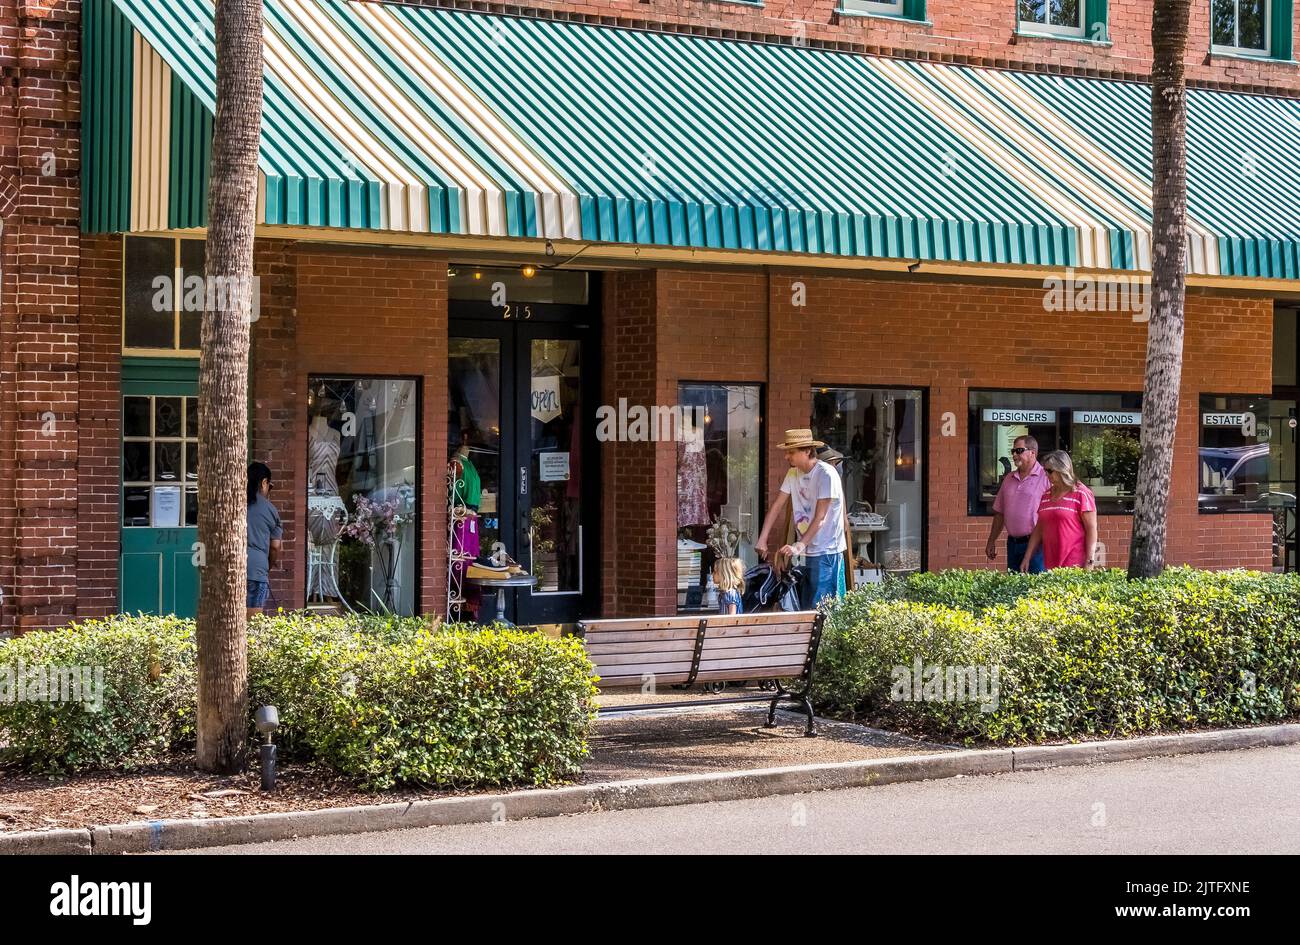 Centre Street nel villaggio di Fernandina Beach su Amelia Island Florida USA Foto Stock